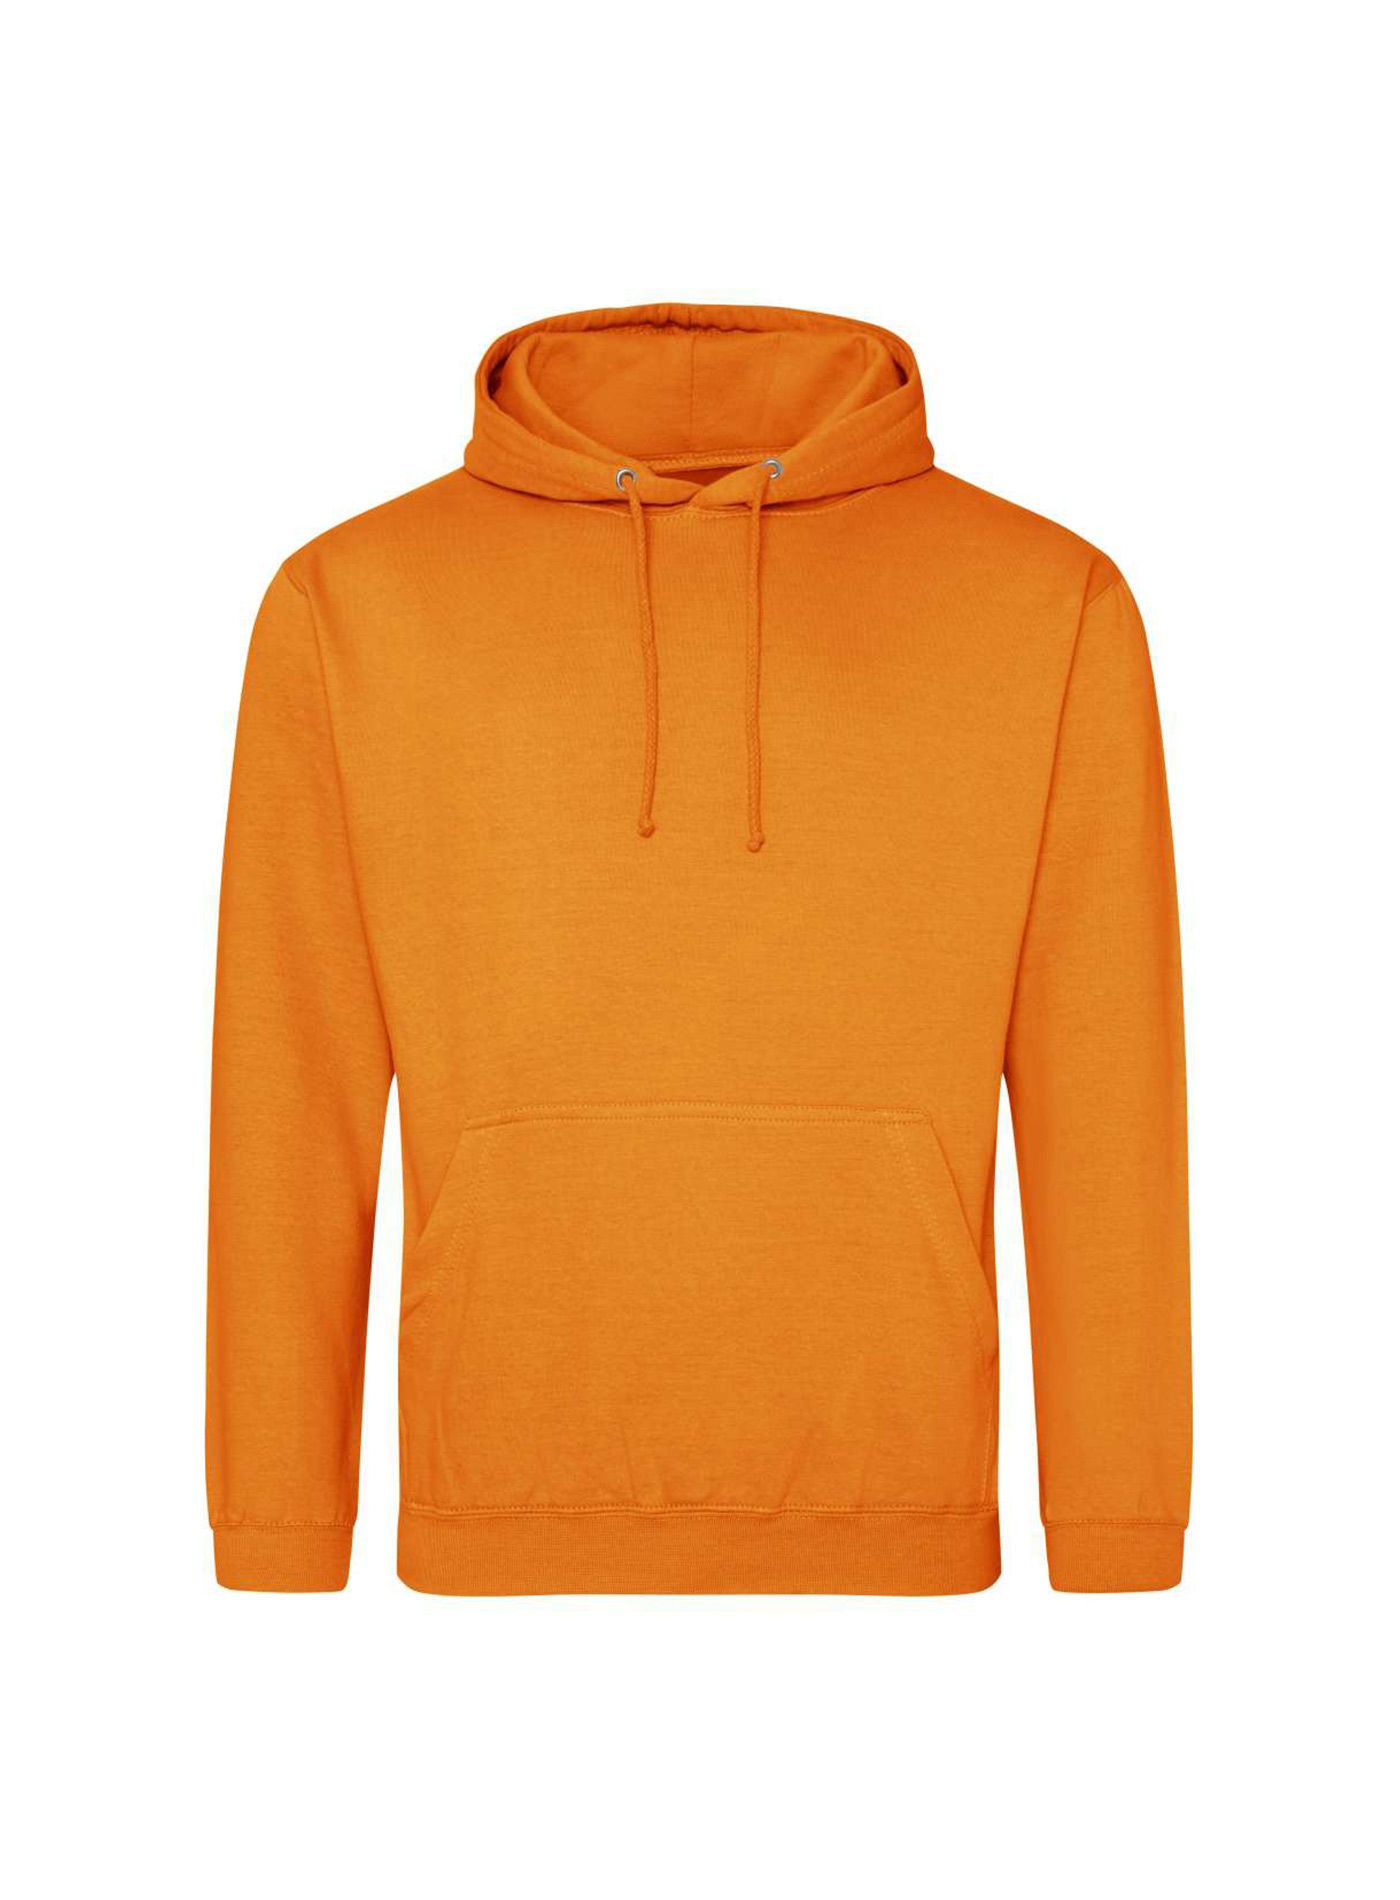 Mikina s kapucí unisex Just Hoods - Neonová oranžová S